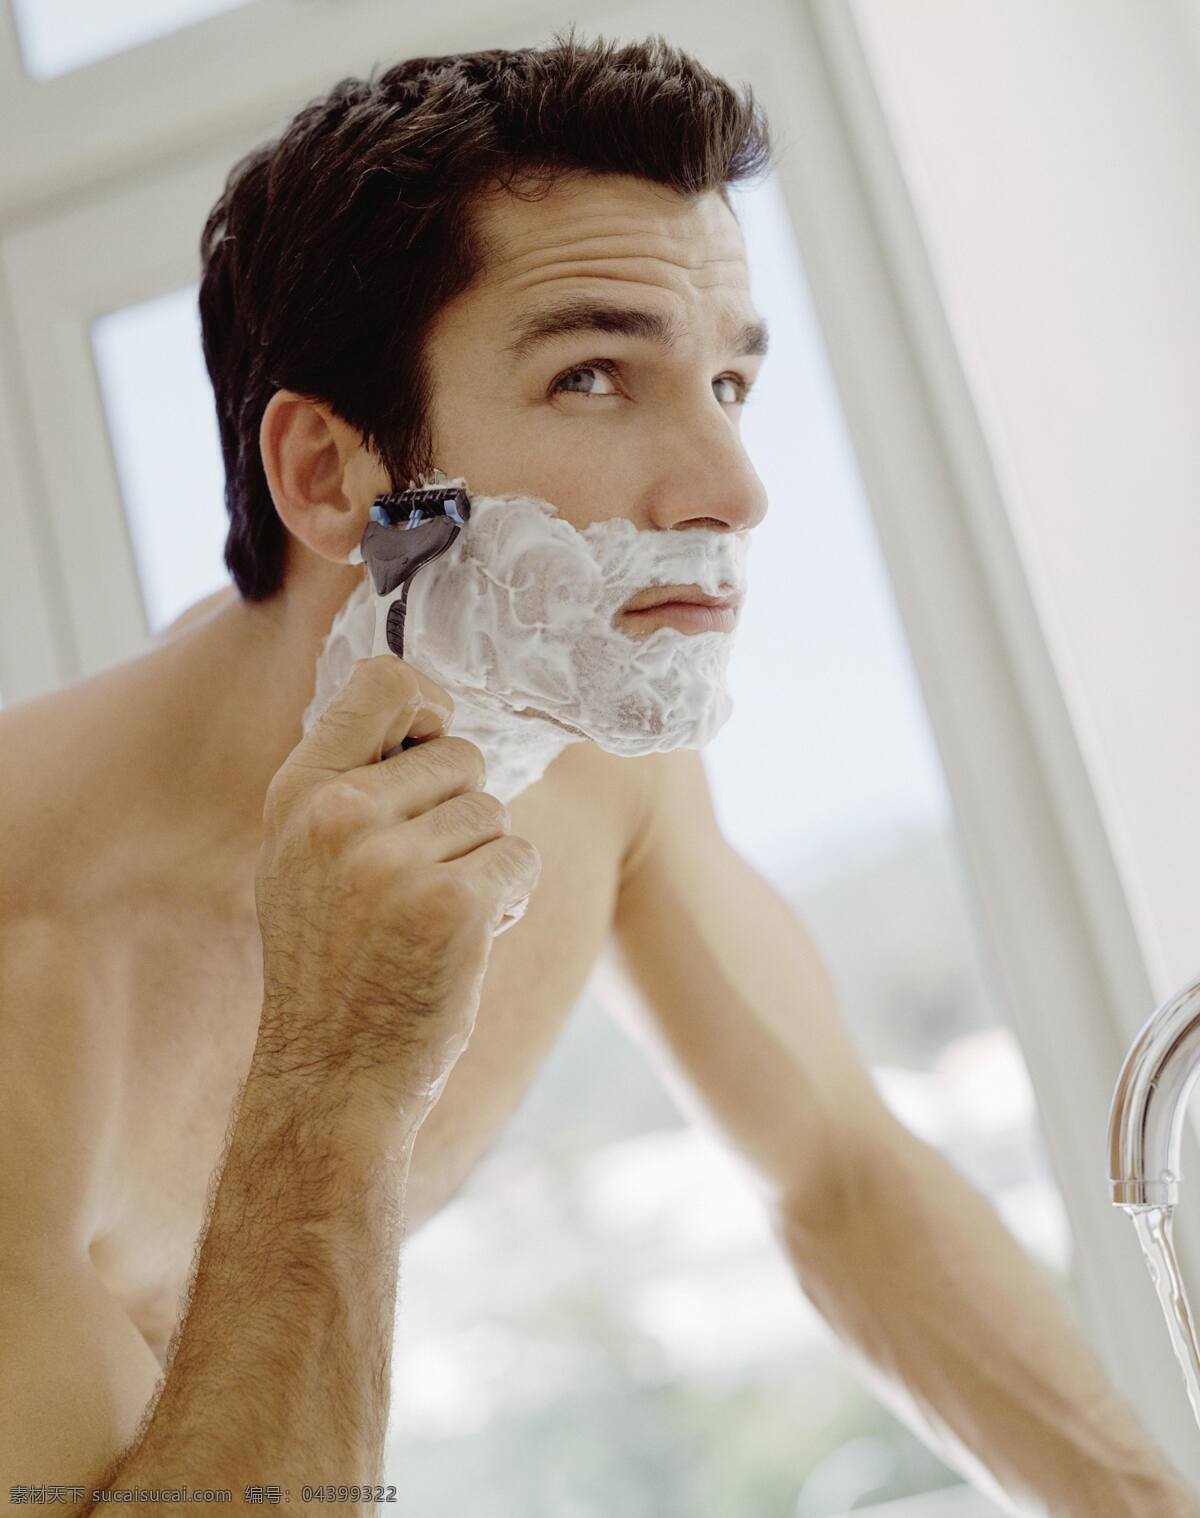 刮 胡须 男人 设计素材 刮胡须 水龙头 中年男子 早餐 家庭 刮胡须的男人 商务人士 人物图片